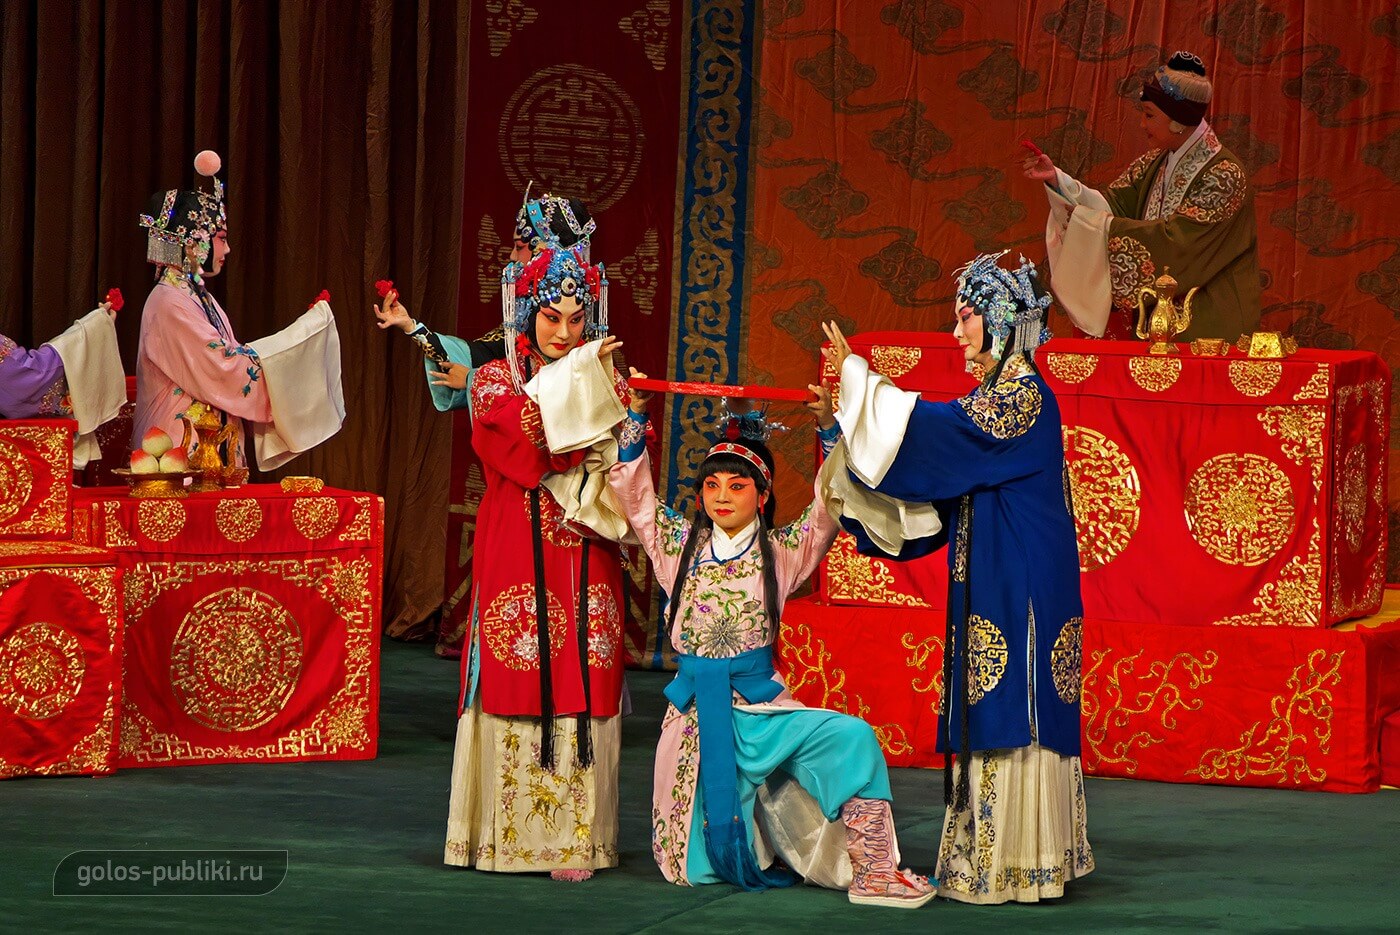 Поколения семьи Ян: Шэ Тайцзюнь (на заднем плане), ее дочери, Му Гуйин (героиня множества китайских легенд) и Вэньгуан